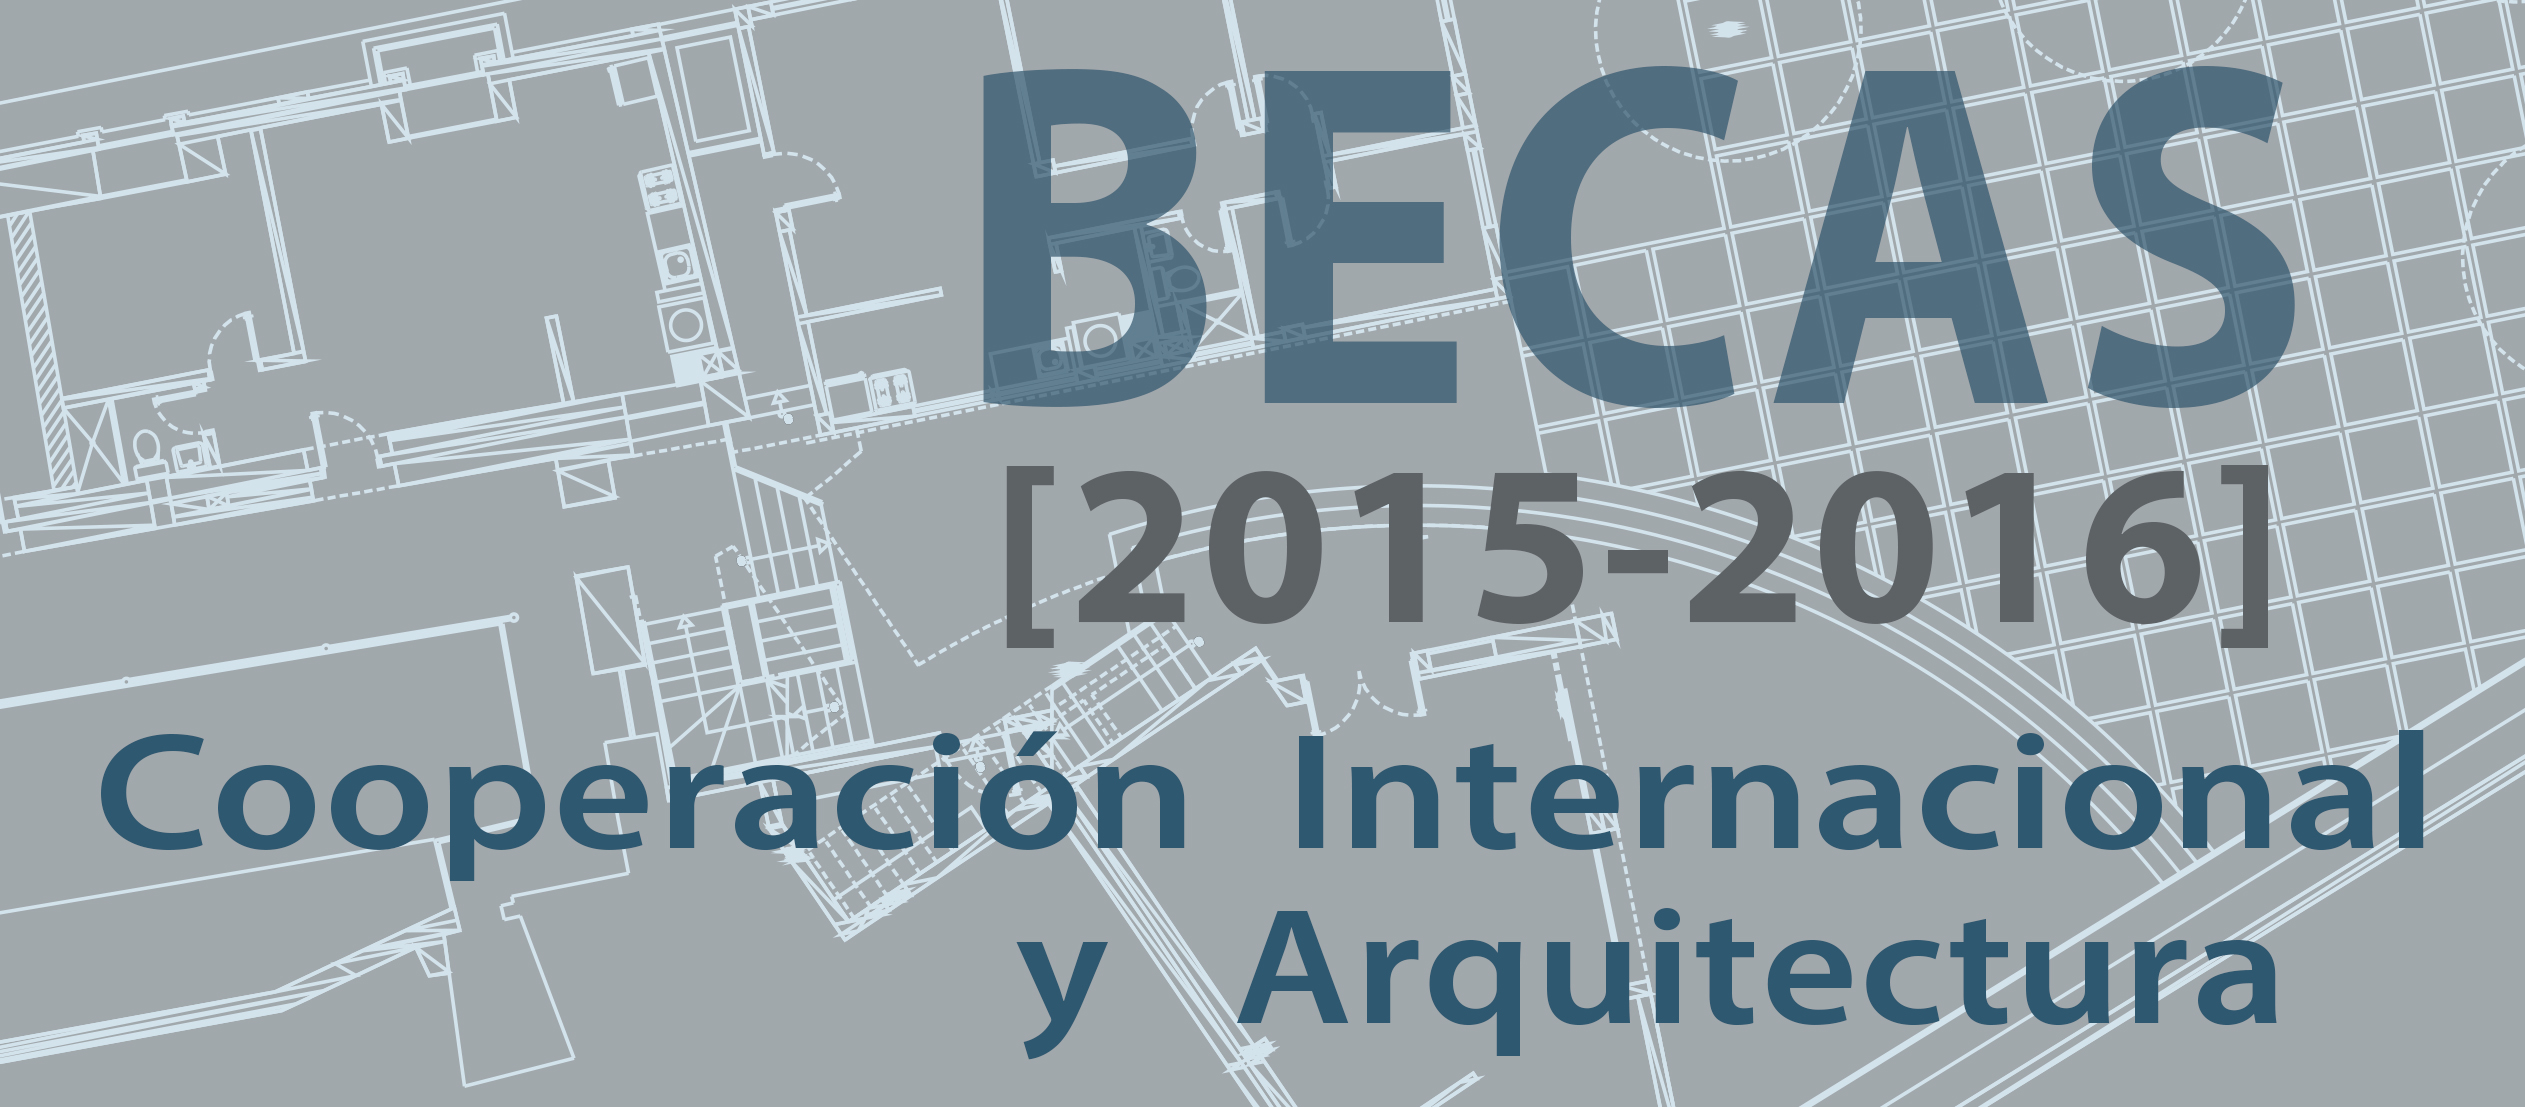 BECAS Cooperación Internacional y Arquitectura CFV